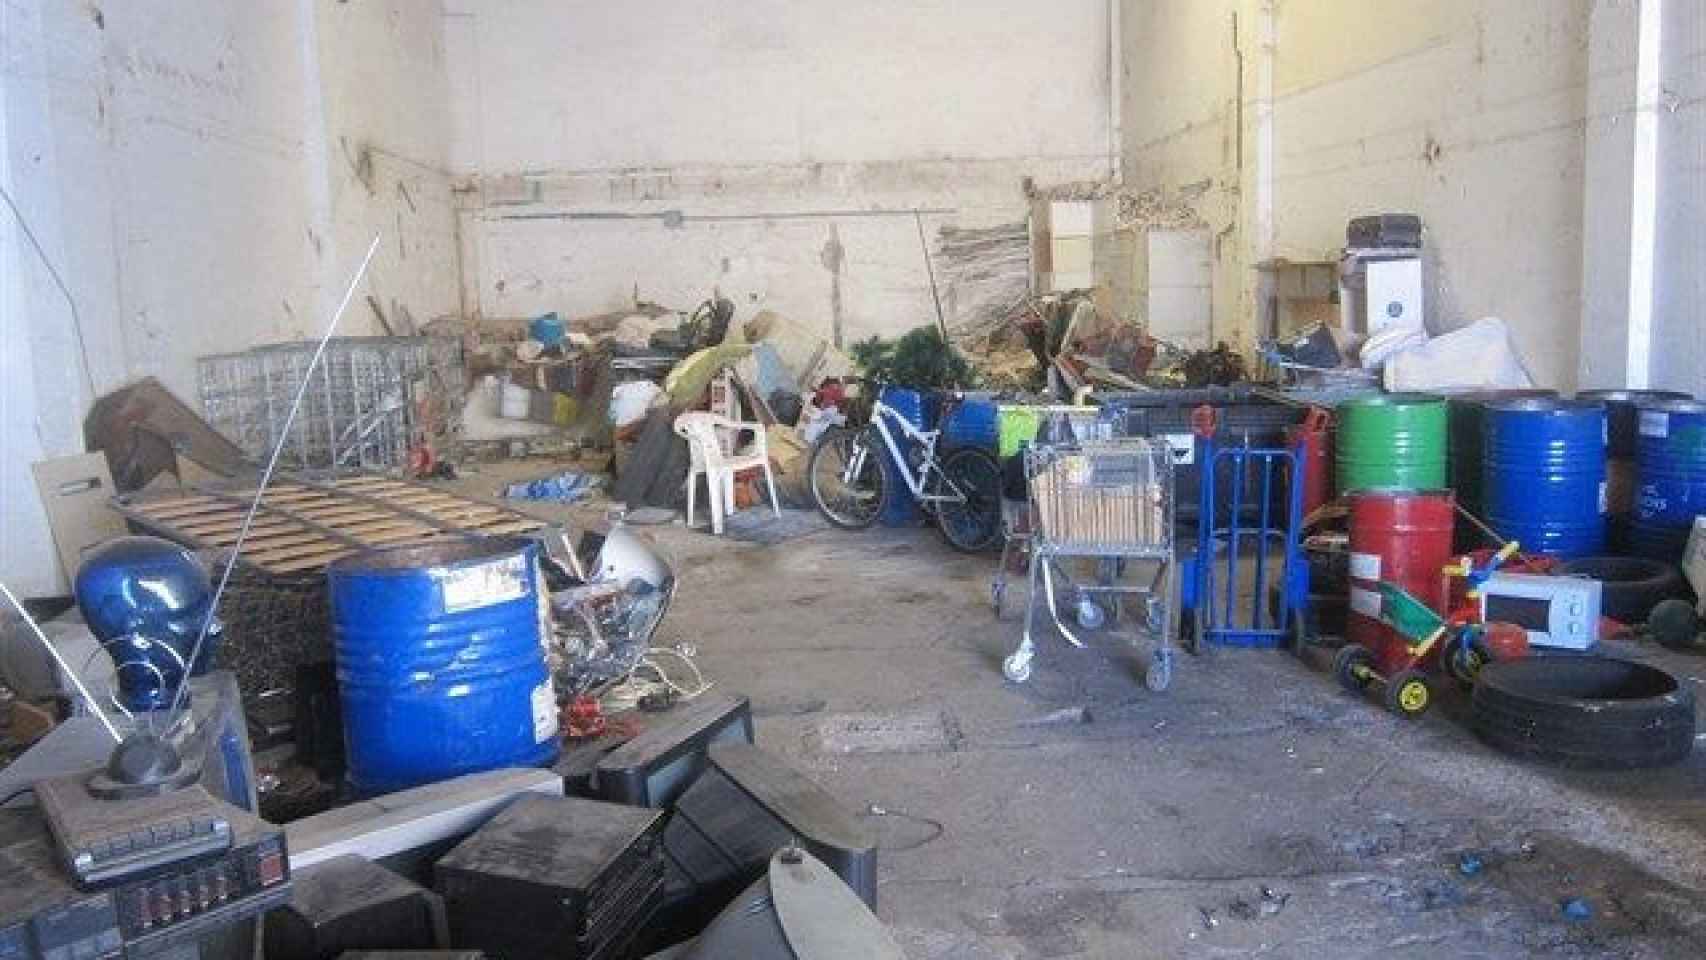 Interior de una fábrica de Sant Martí, llena de suciedad, que funcionaba como asentamiento / EUROPA PRESS